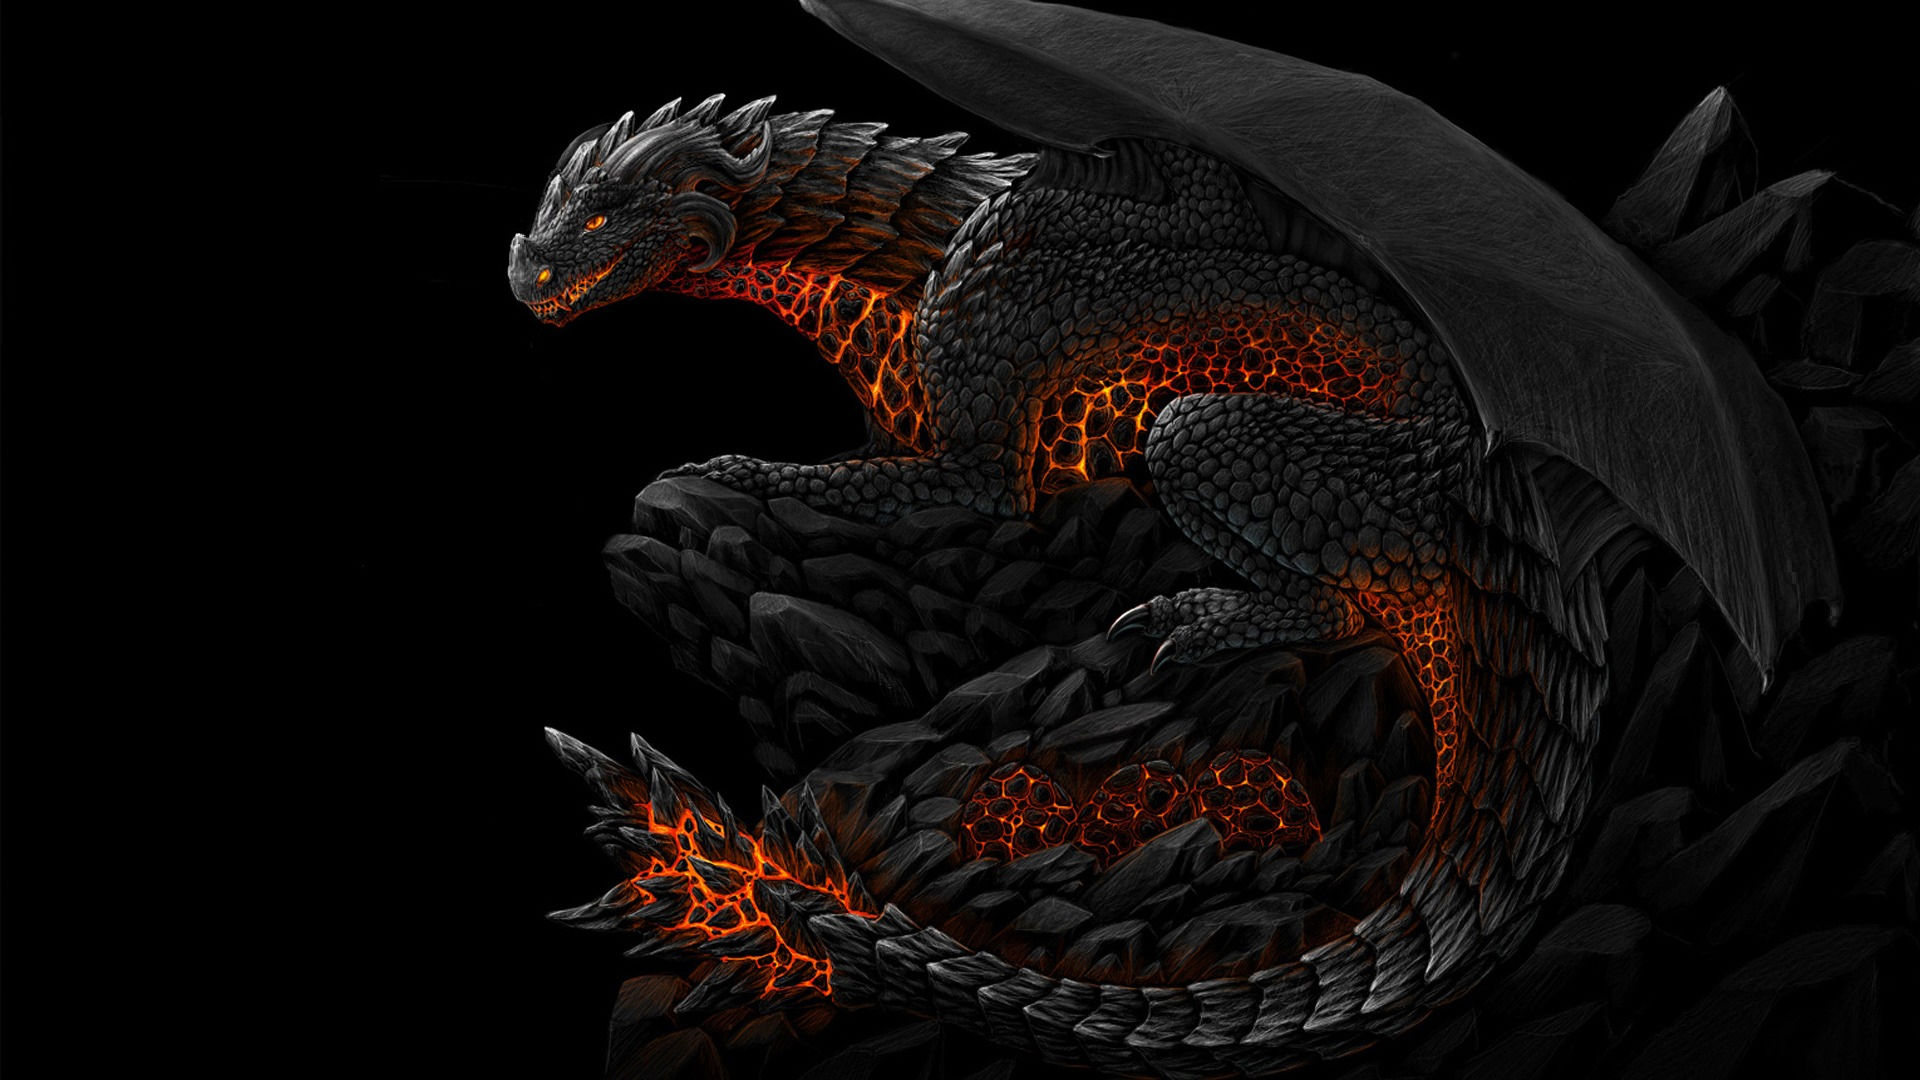 Hd dragon wallpaper